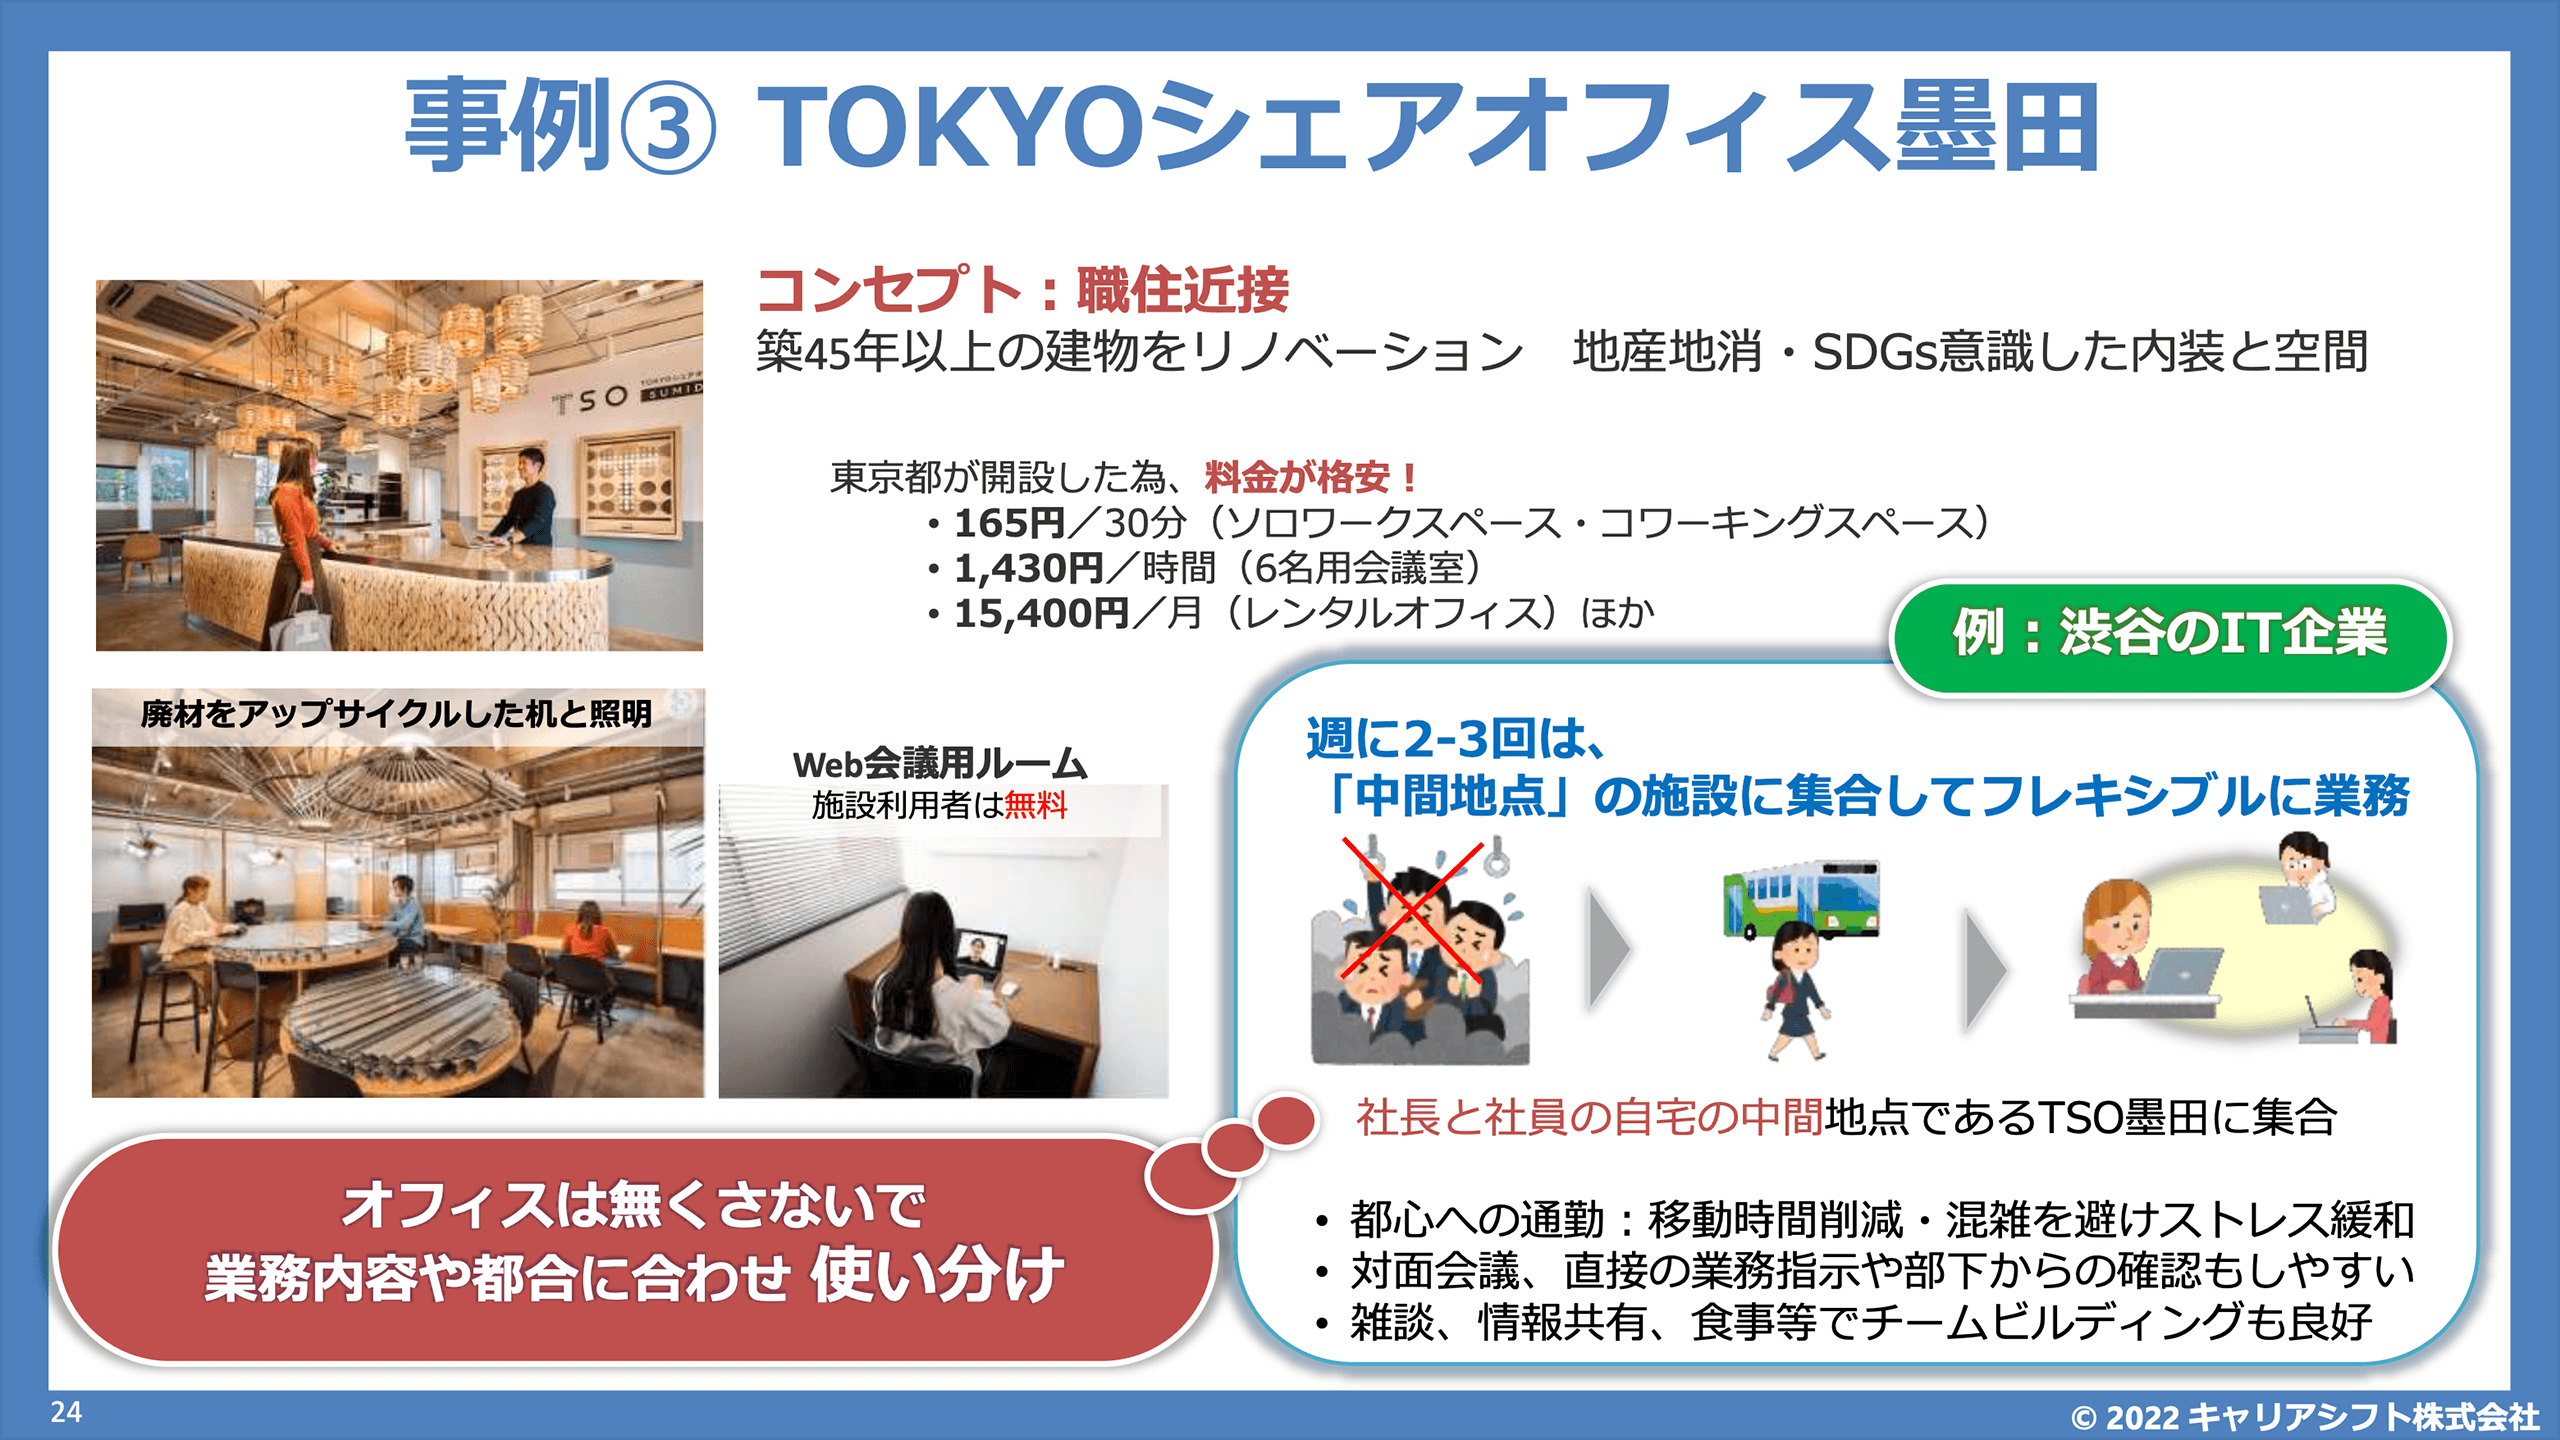 ●【スライド】TOKYOシェアオフィス墨田